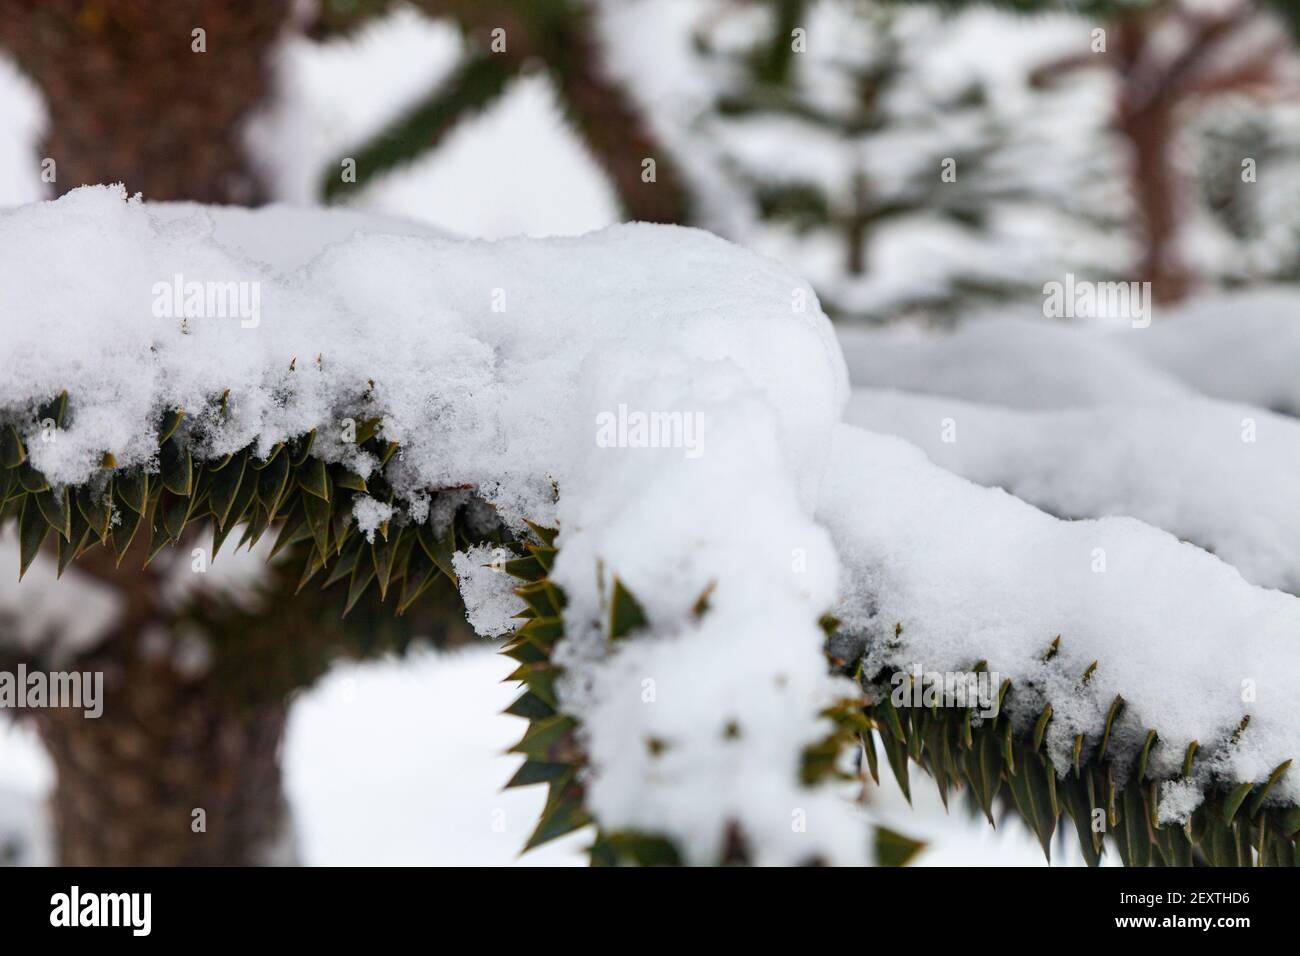 Araucaria dans la neige. Gros plan sur les branches. Araucaria dans le parc en hiver. Banque D'Images